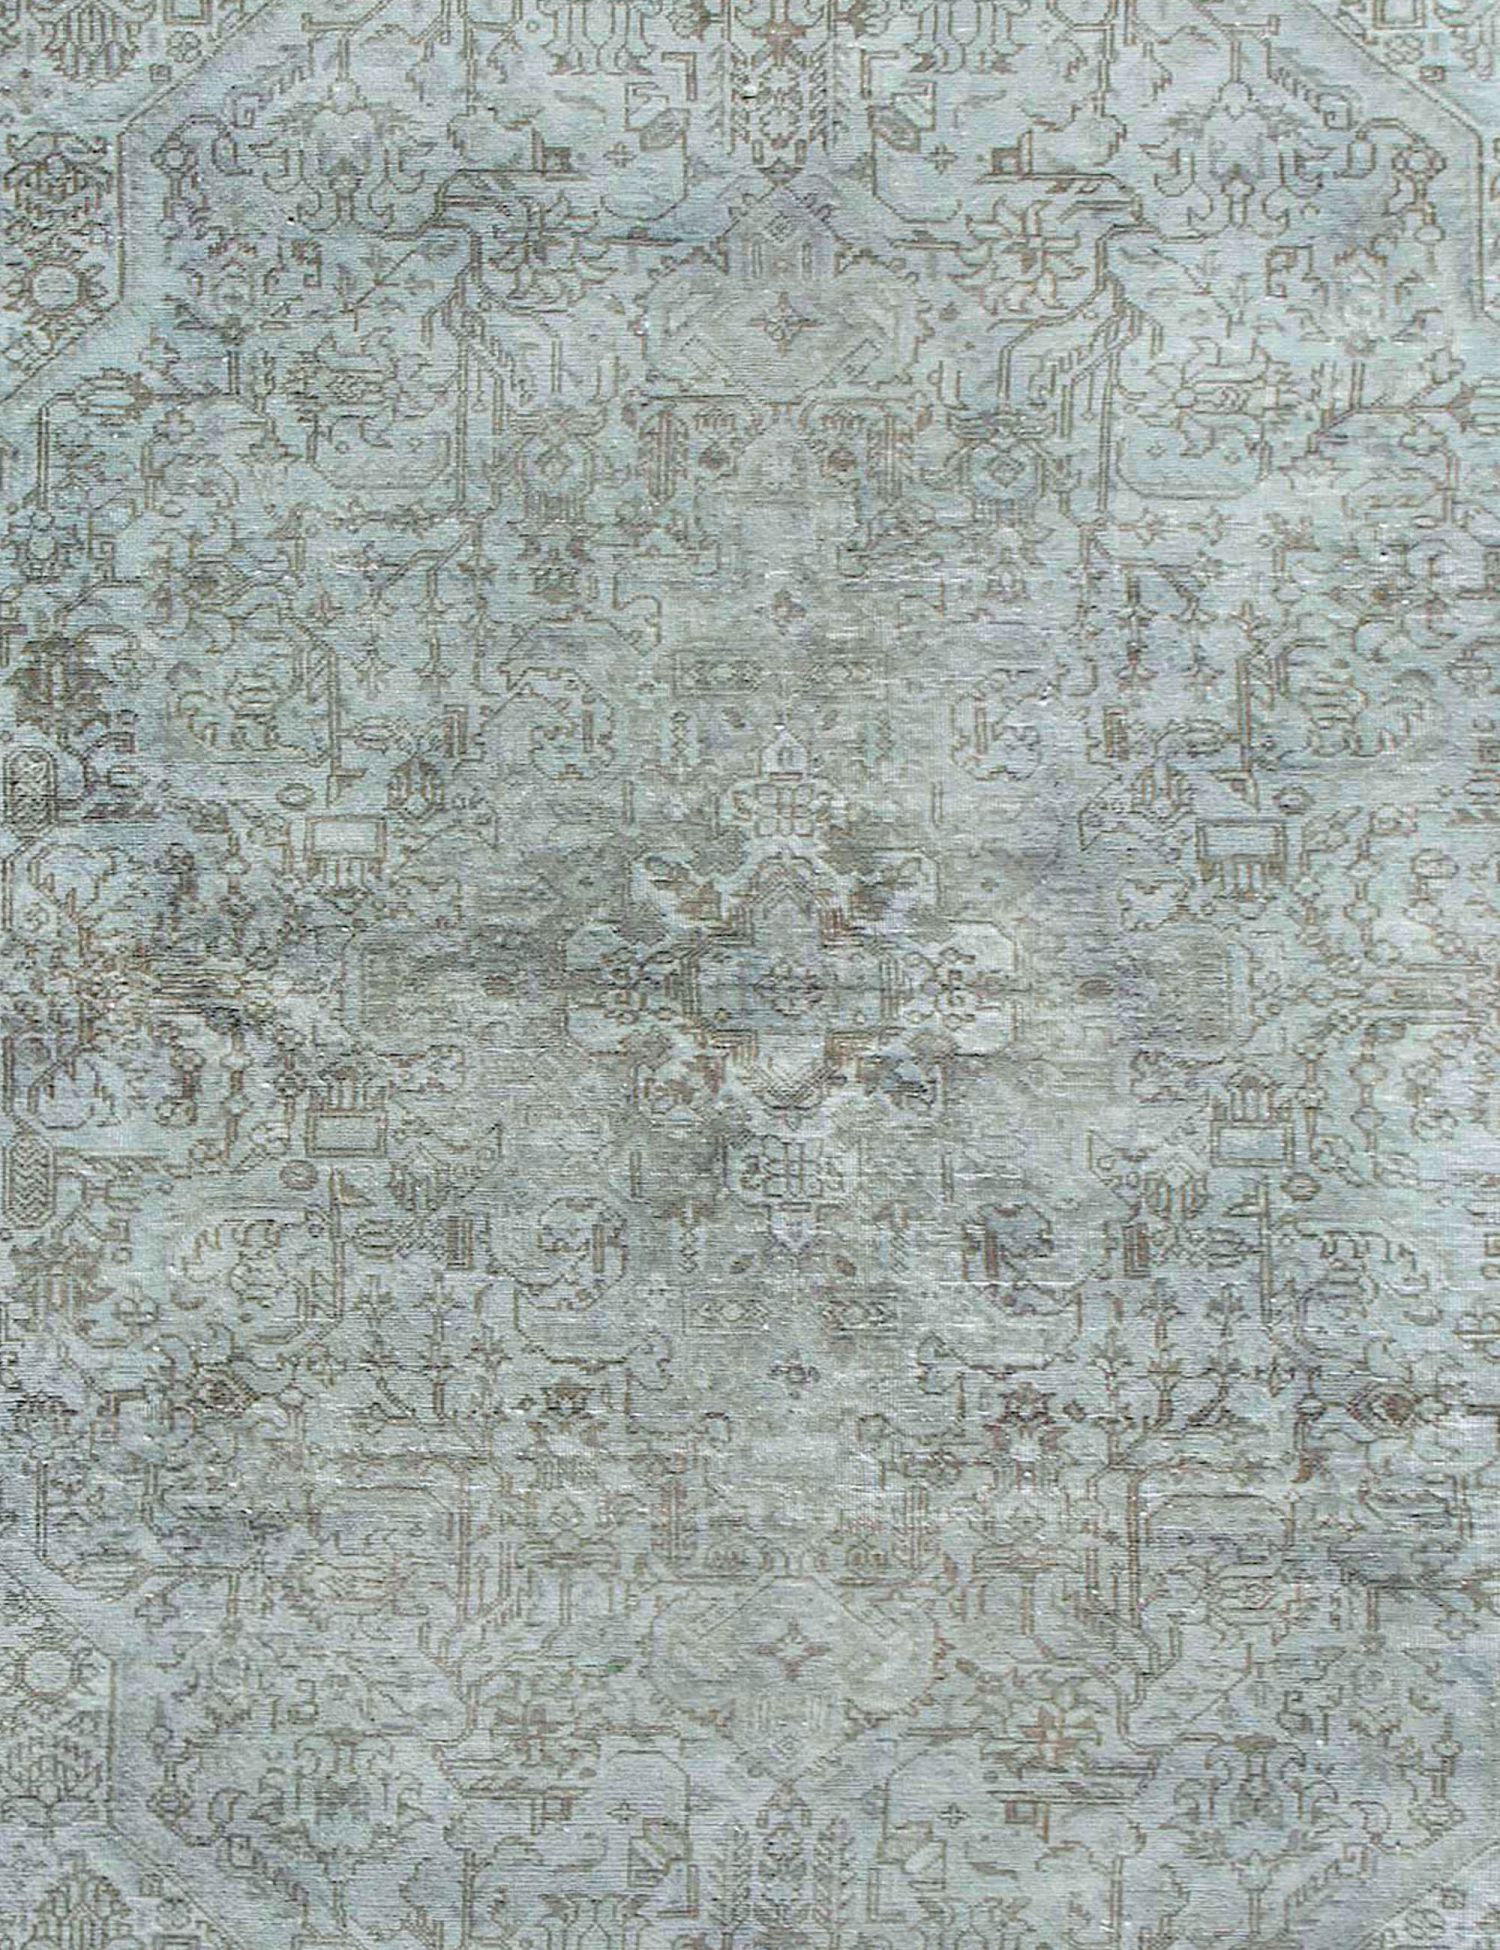 Persischer Vintage Teppich  grün <br/>285 x 190 cm